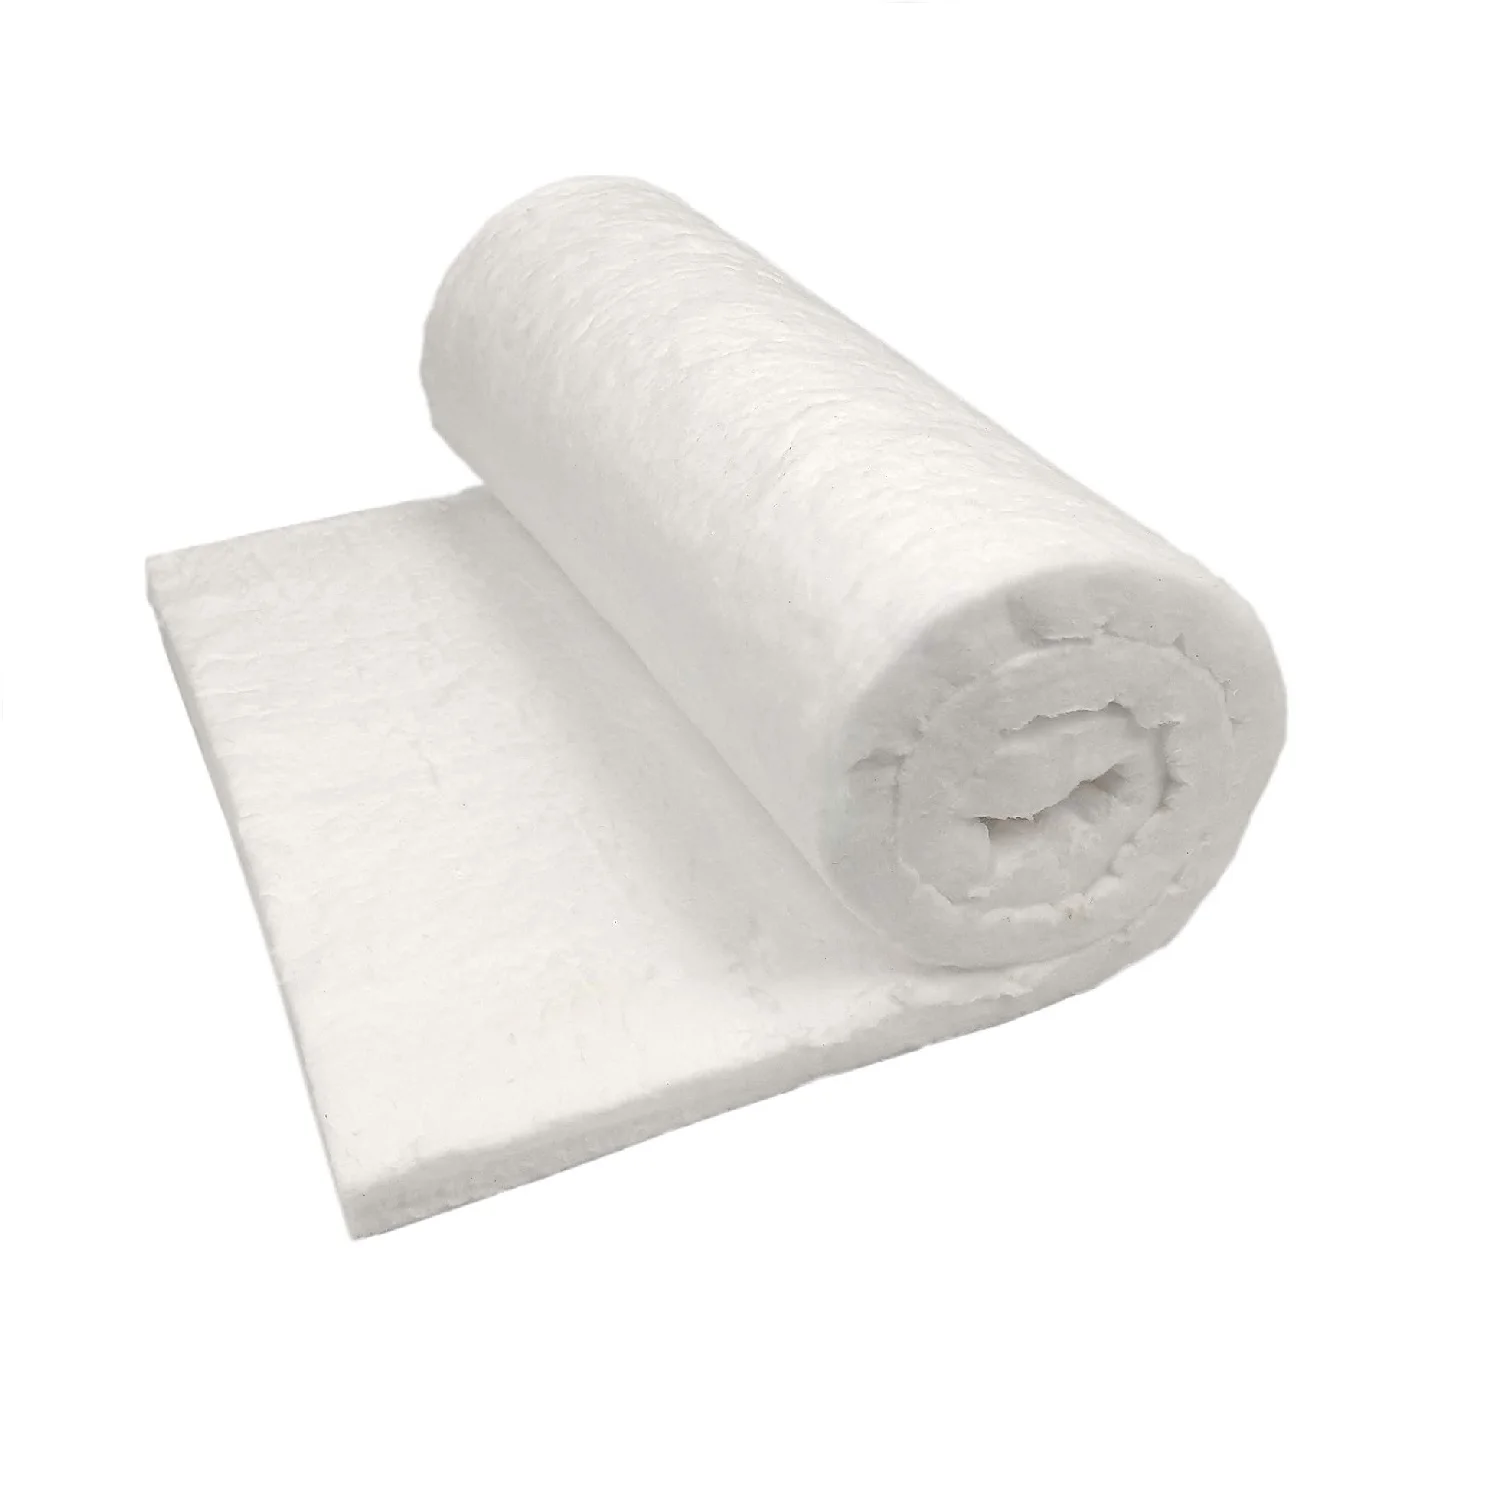 1260 керамическое волокно шерстяное одеяло рулон изоляции Superwool керамическое шерстяное одеяло волокно заводская цена 1260 градусов керамическое волокно